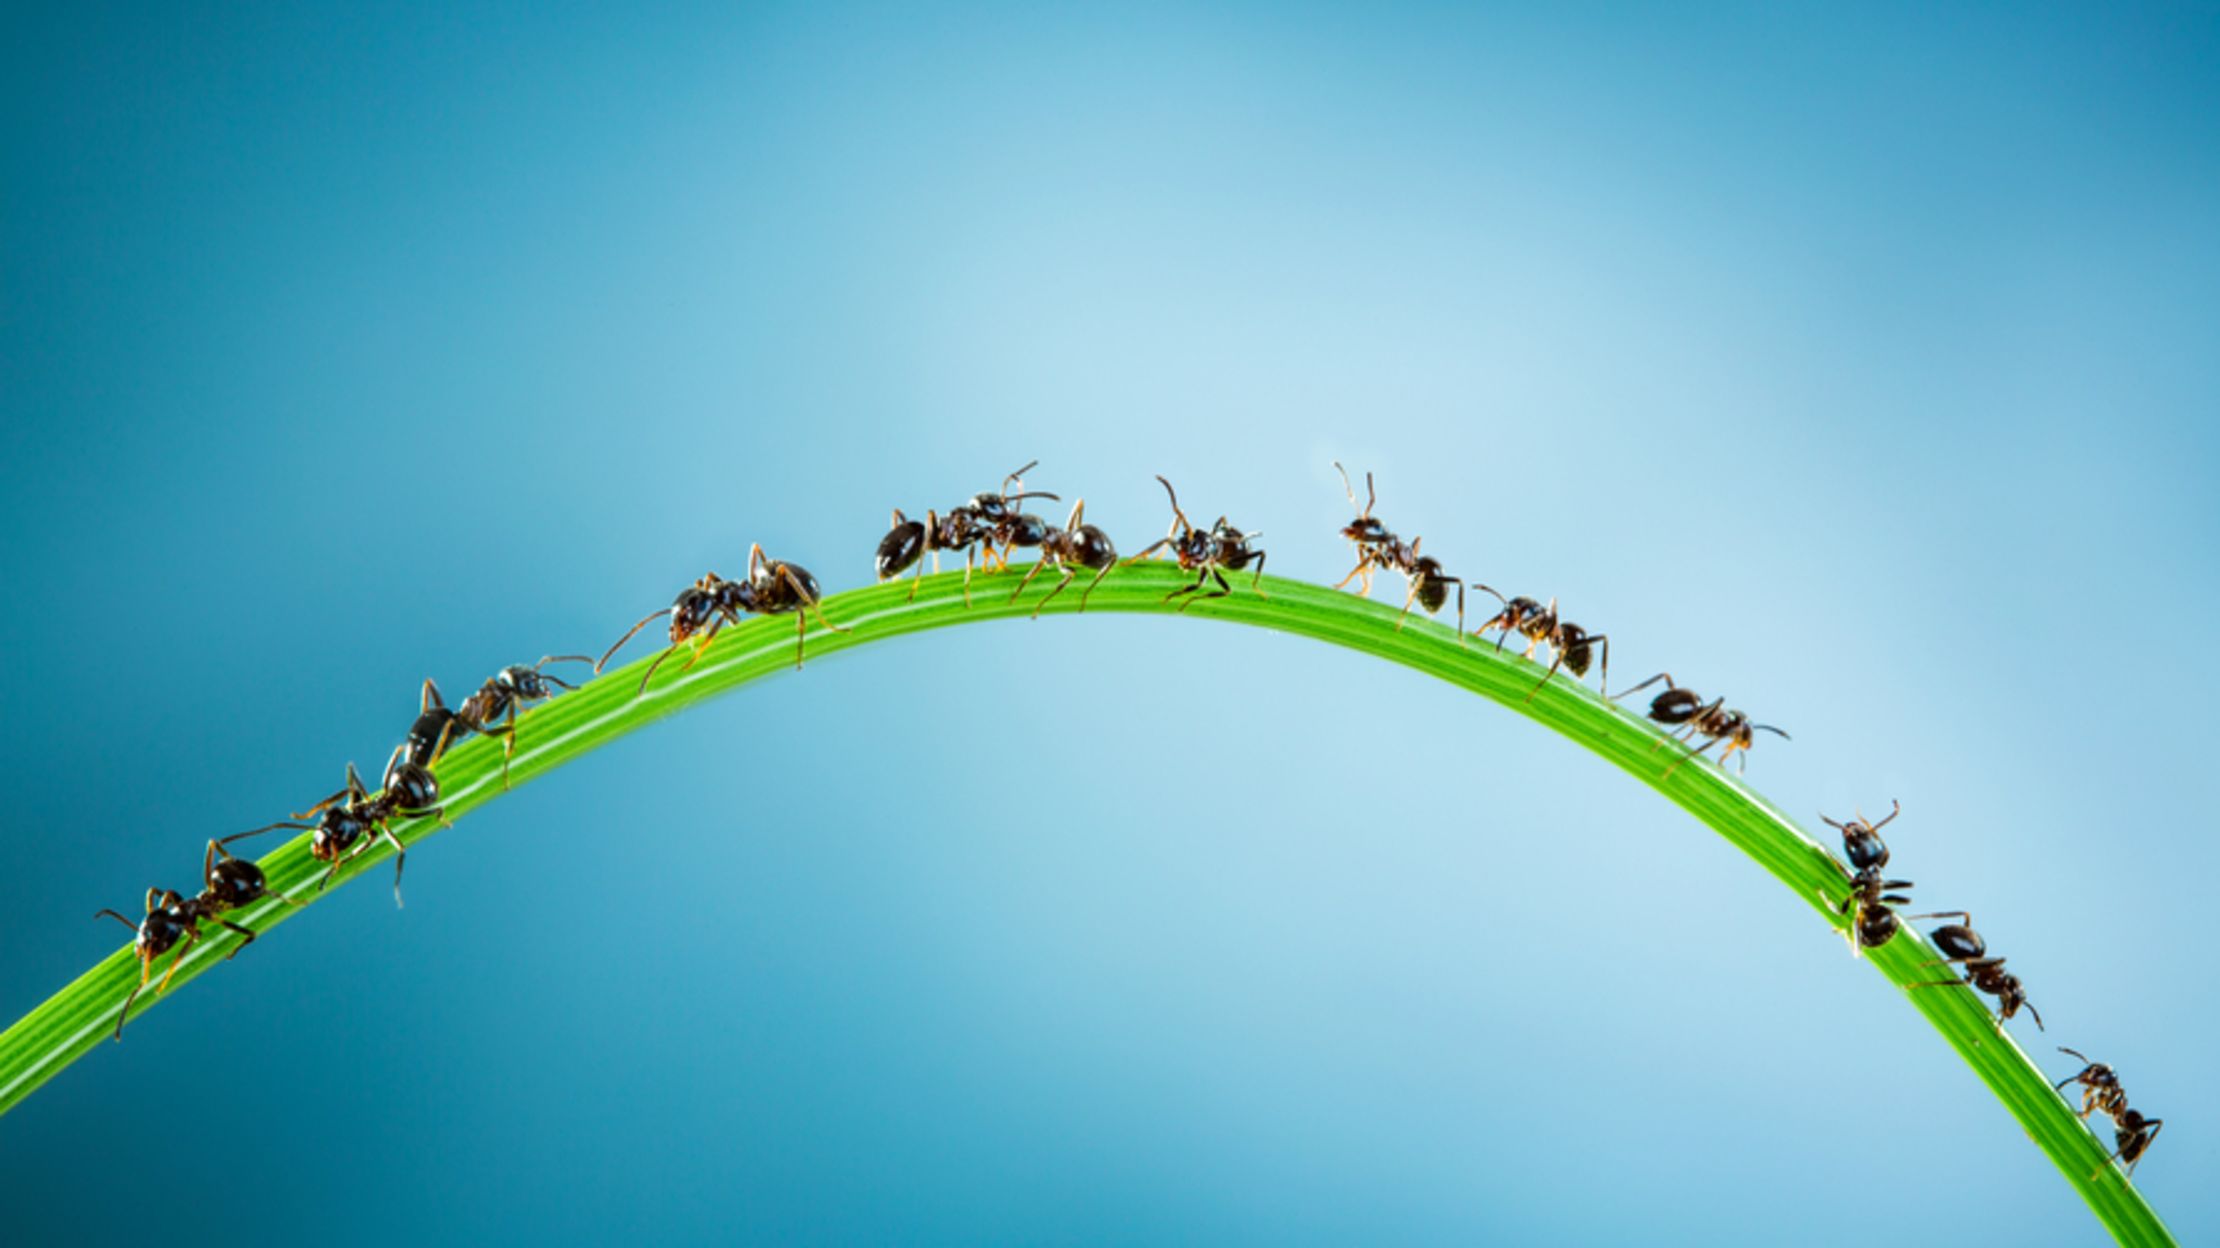 death spiral ant